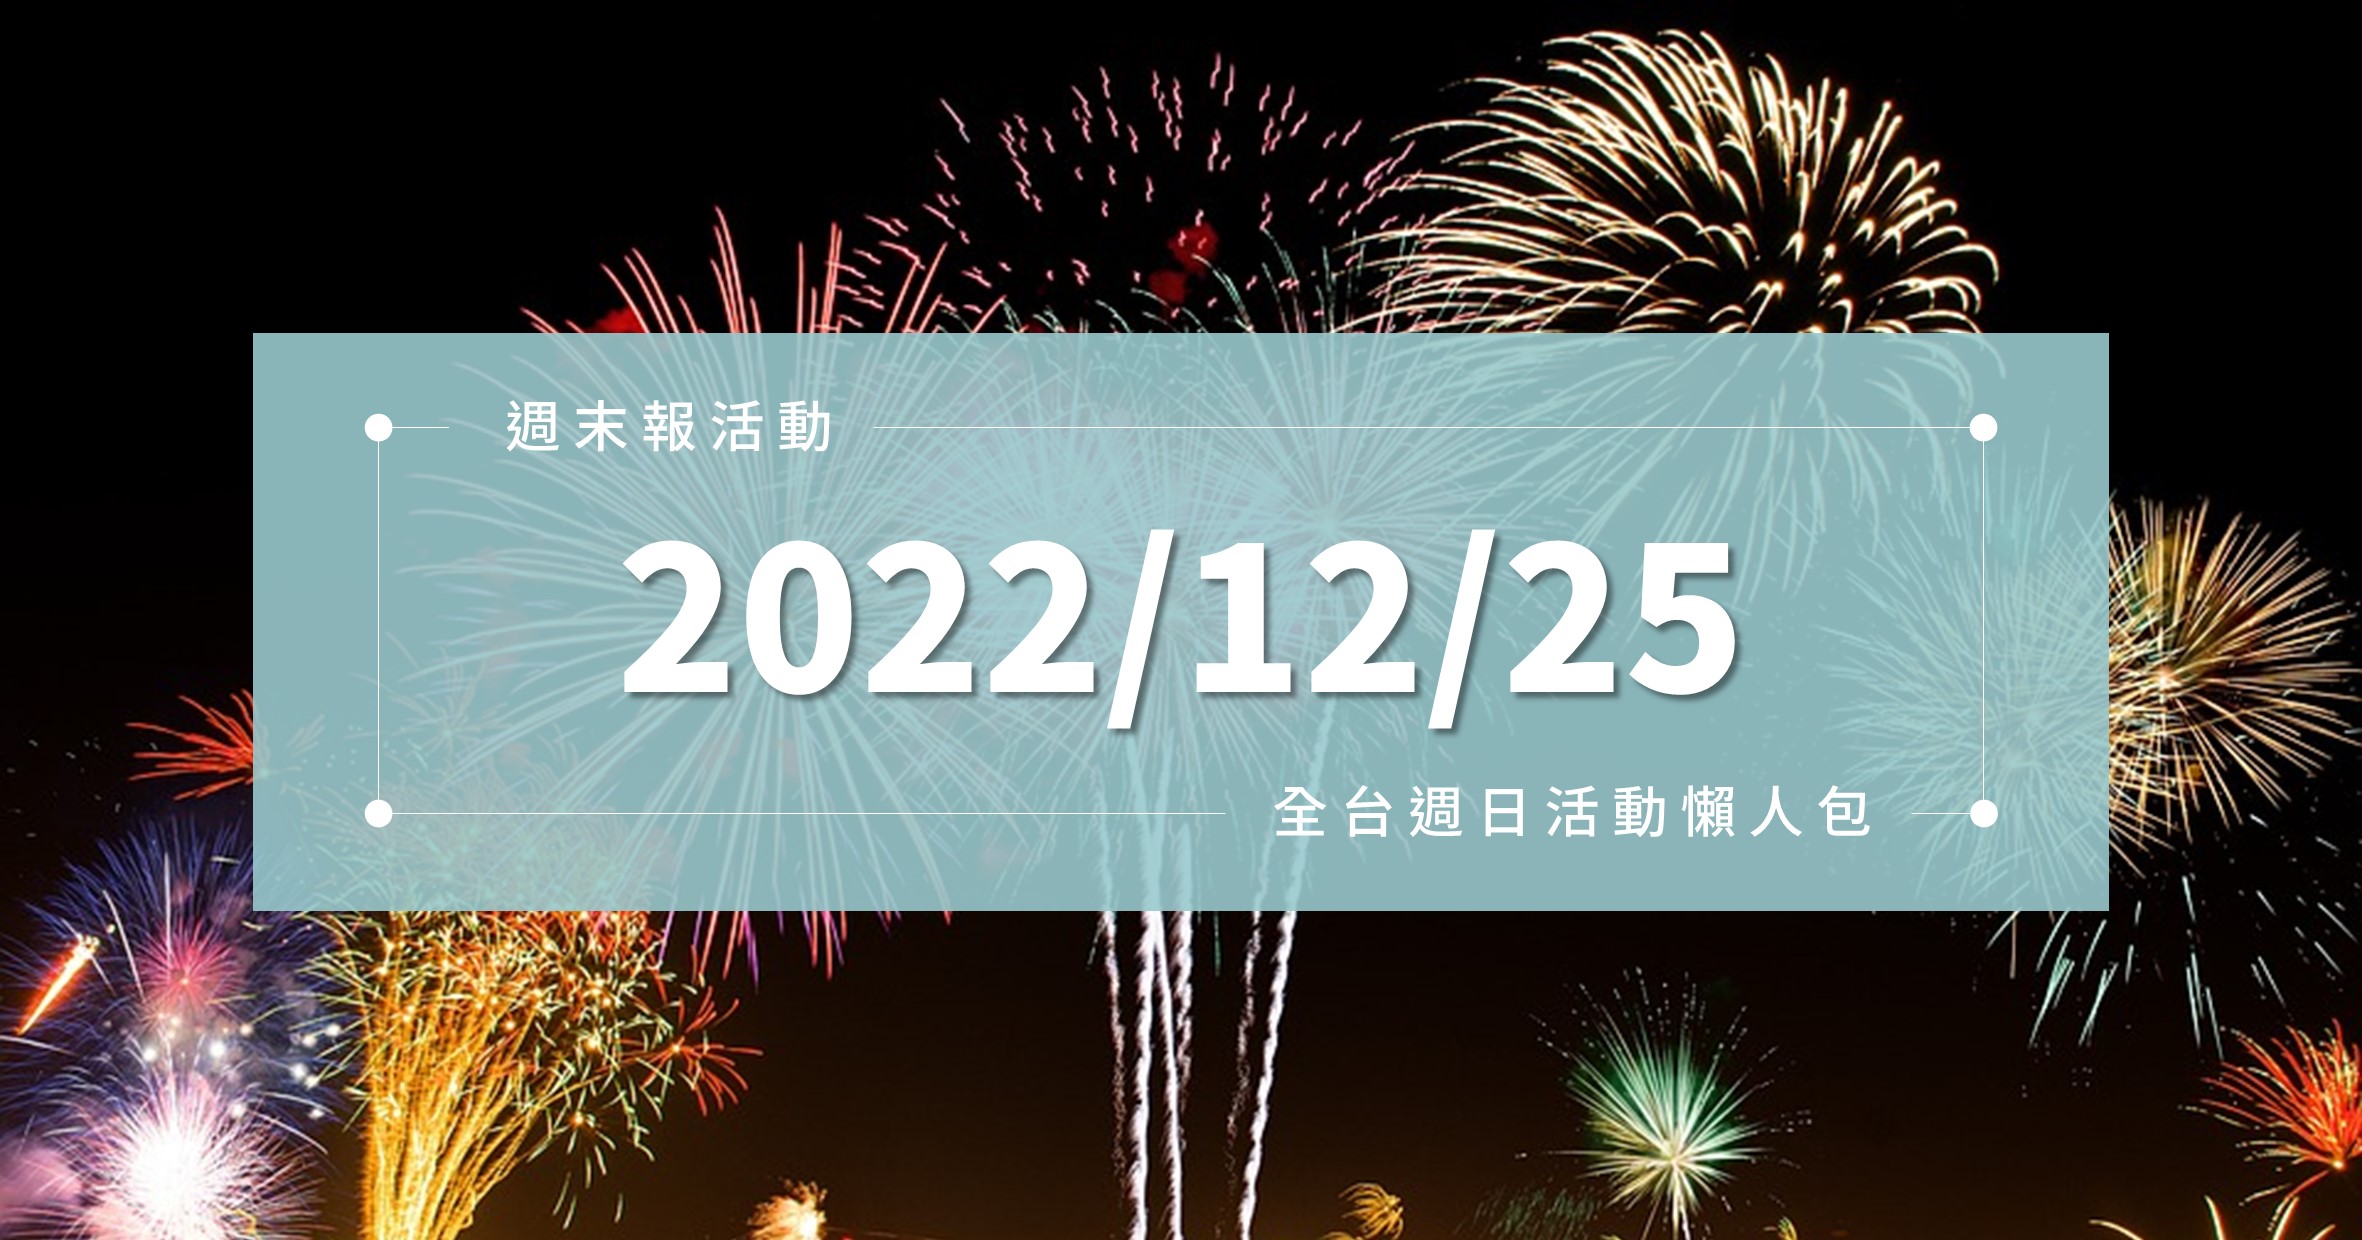 週末活動》全台「2022/12/25」週日活動整理